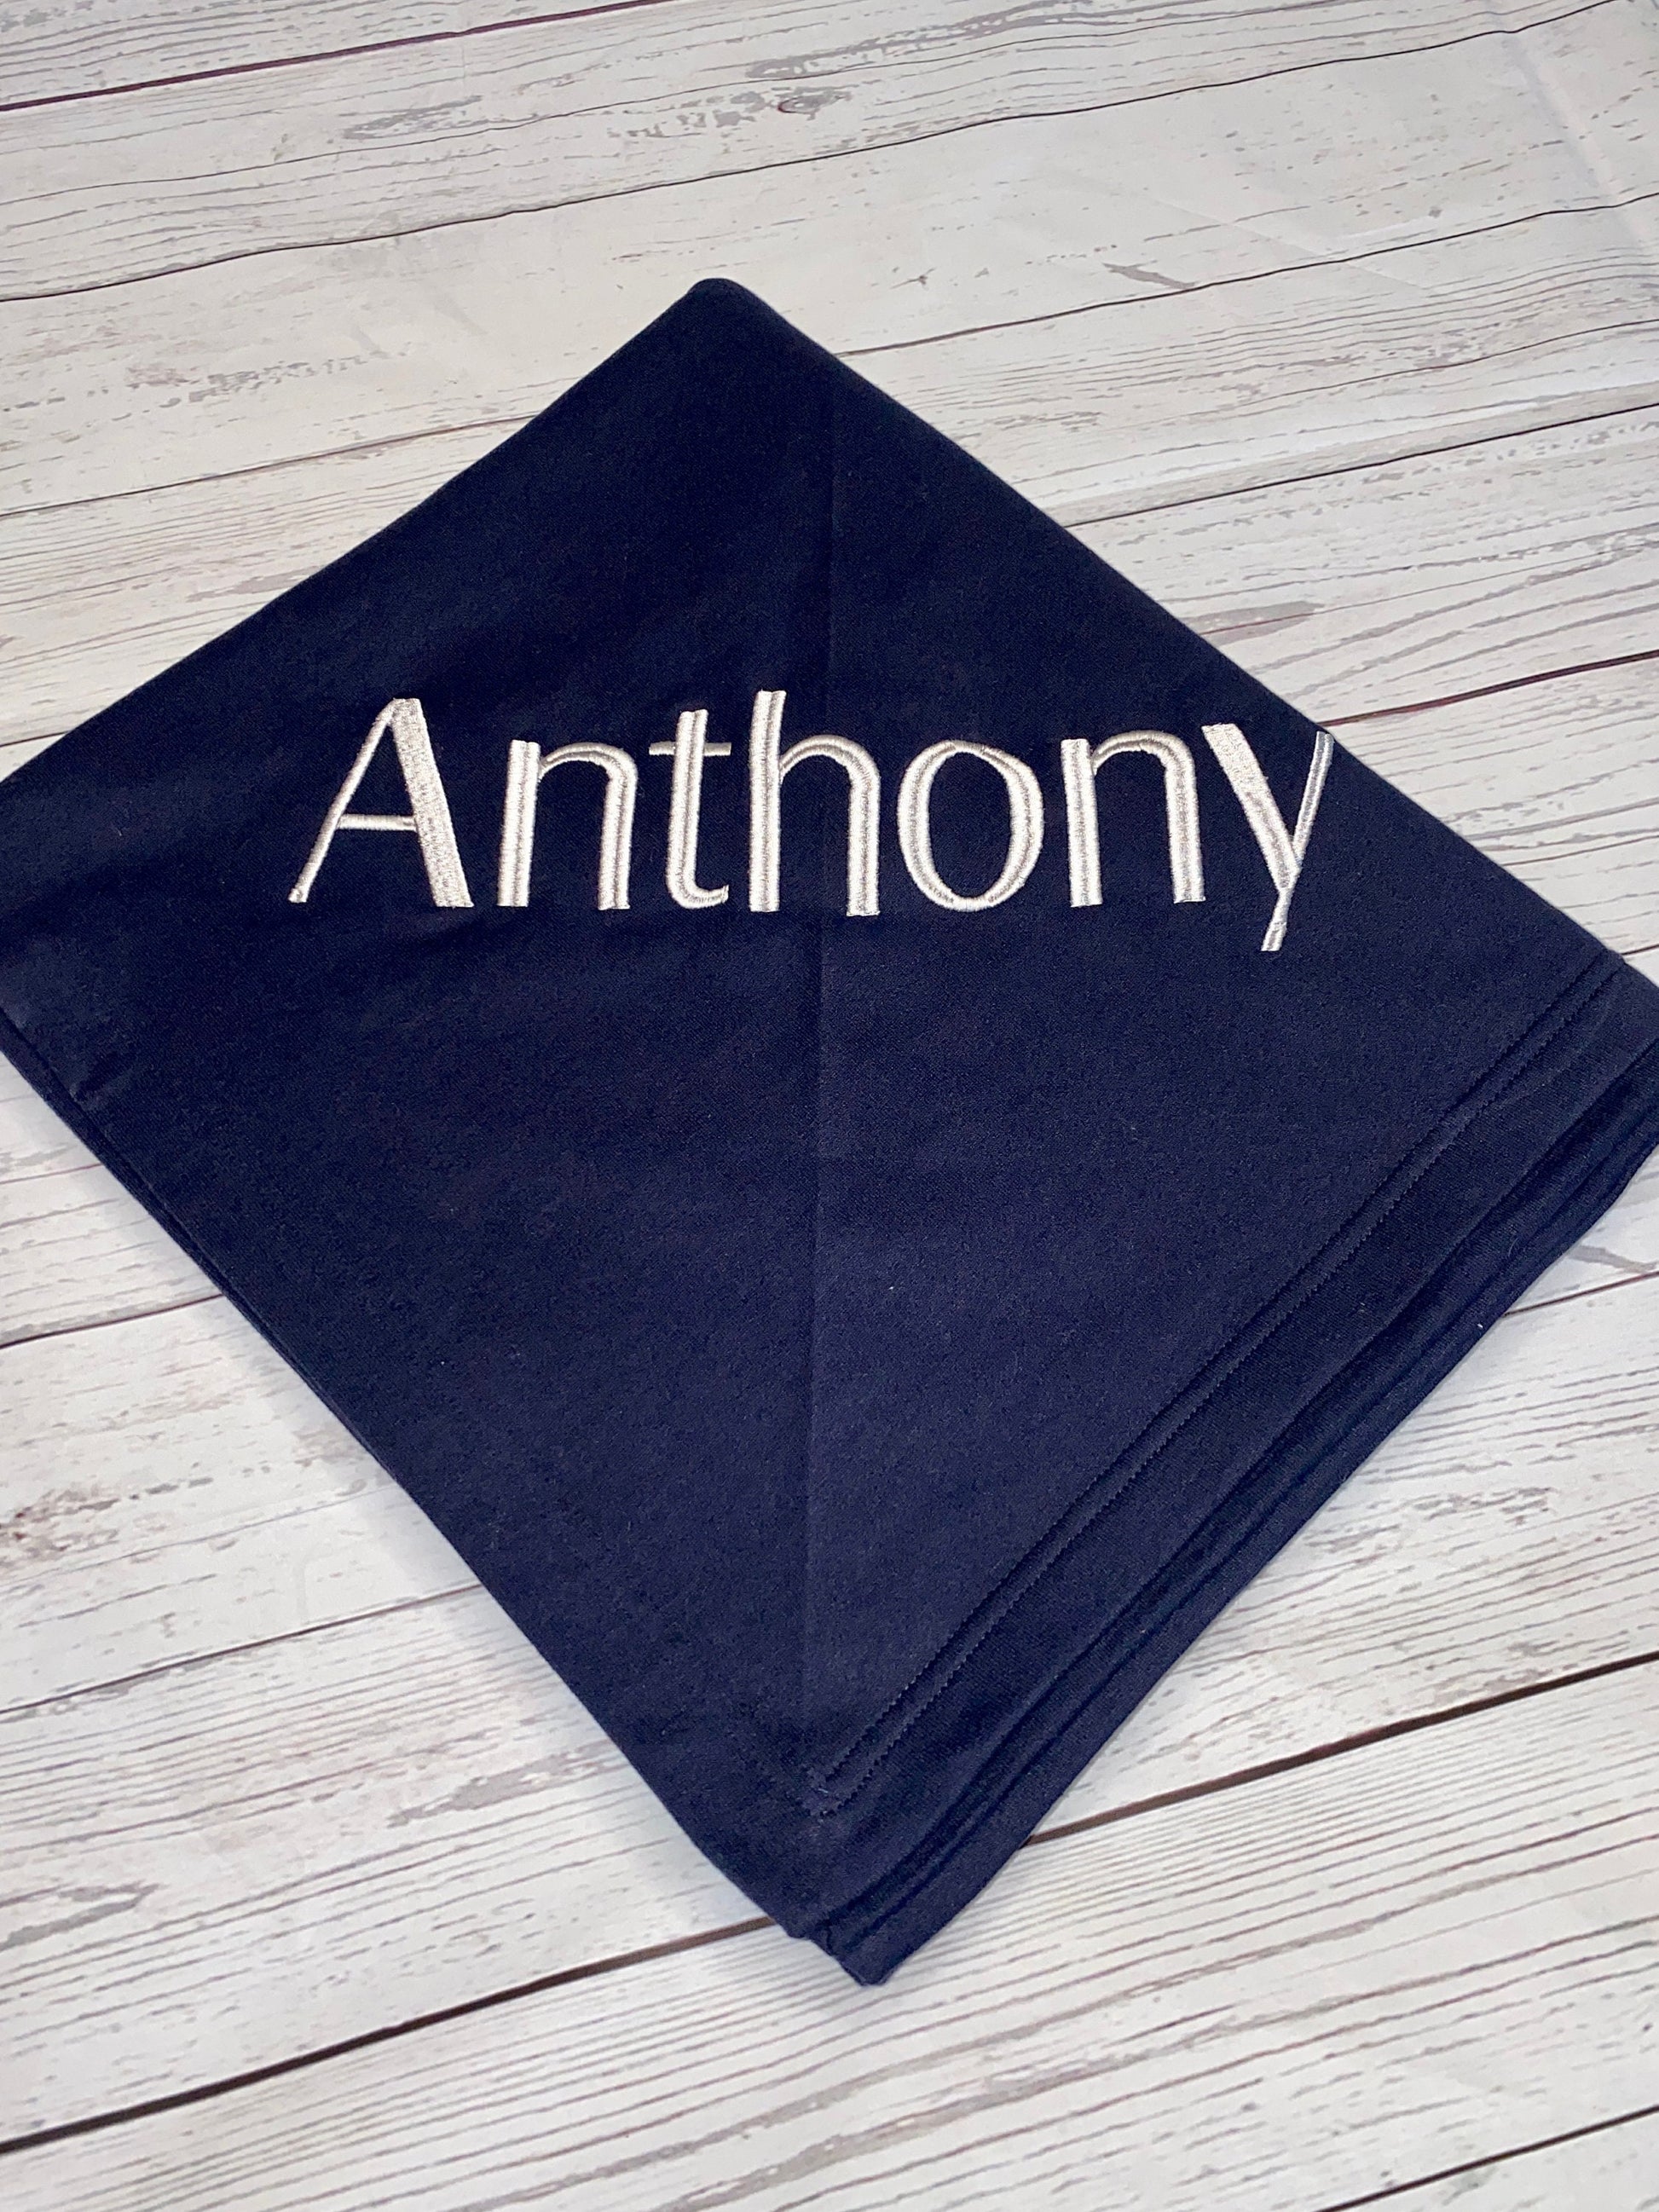 Oversized Monogram Sweatshirt Stadium Blanket, Personalized Fleece Blanket, Blanket for Graduation Gift, Custom Blanket with Name